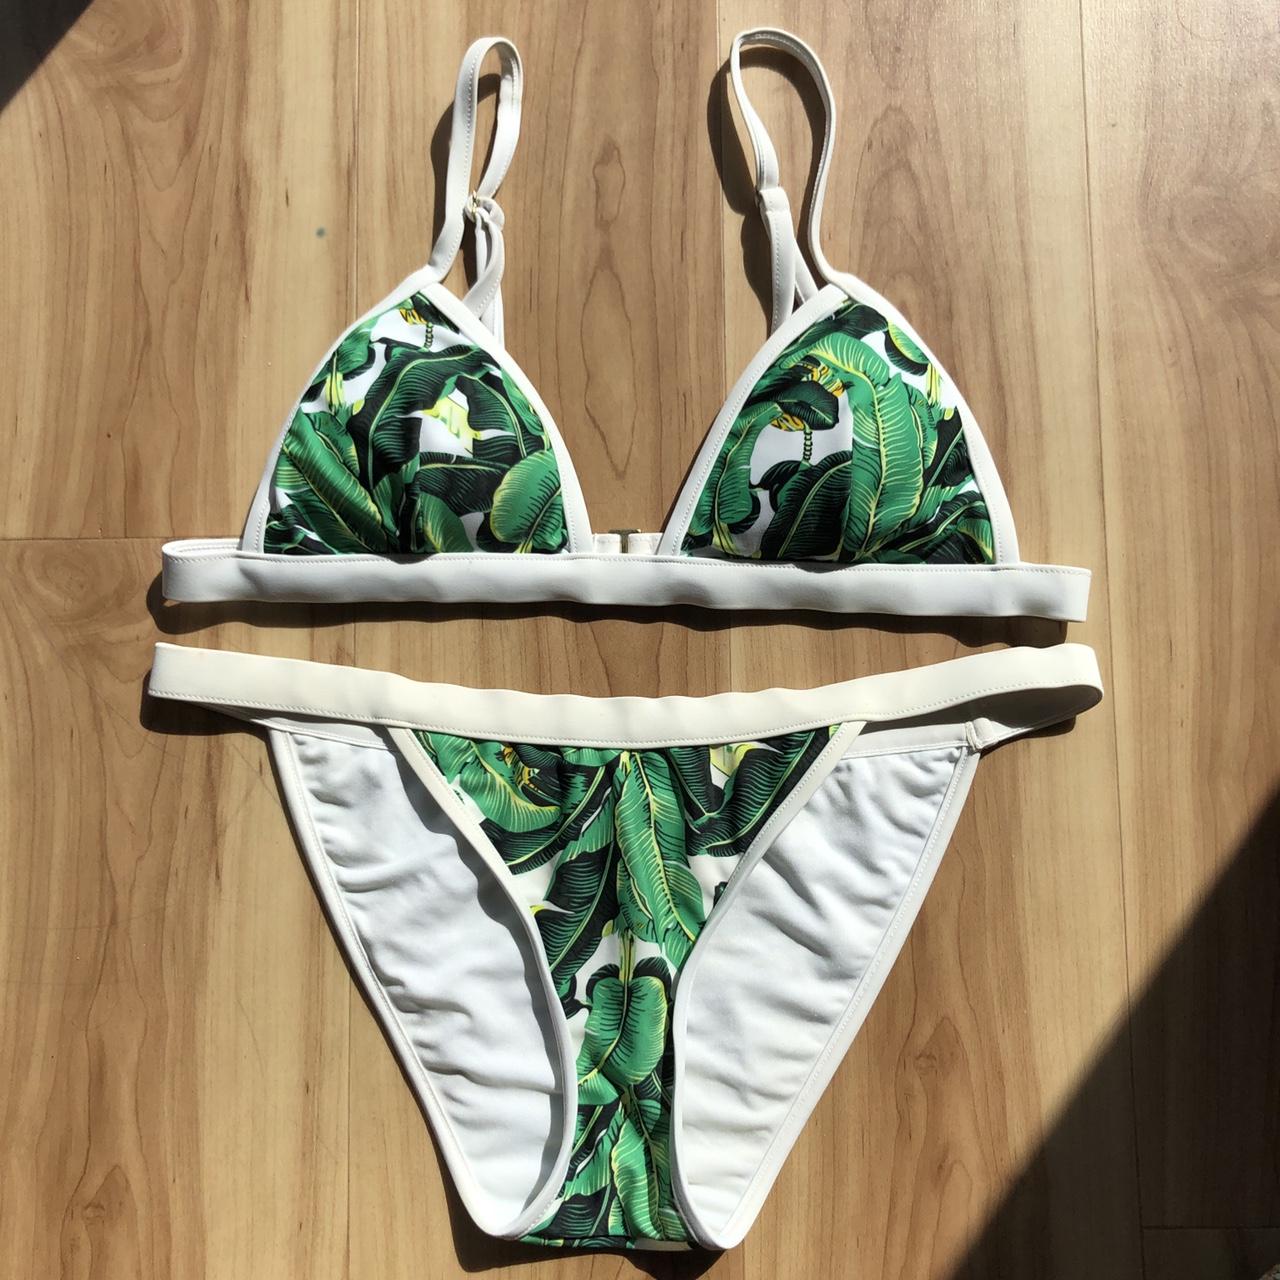 Product Image 1 - Banana leaf print triangle bikini